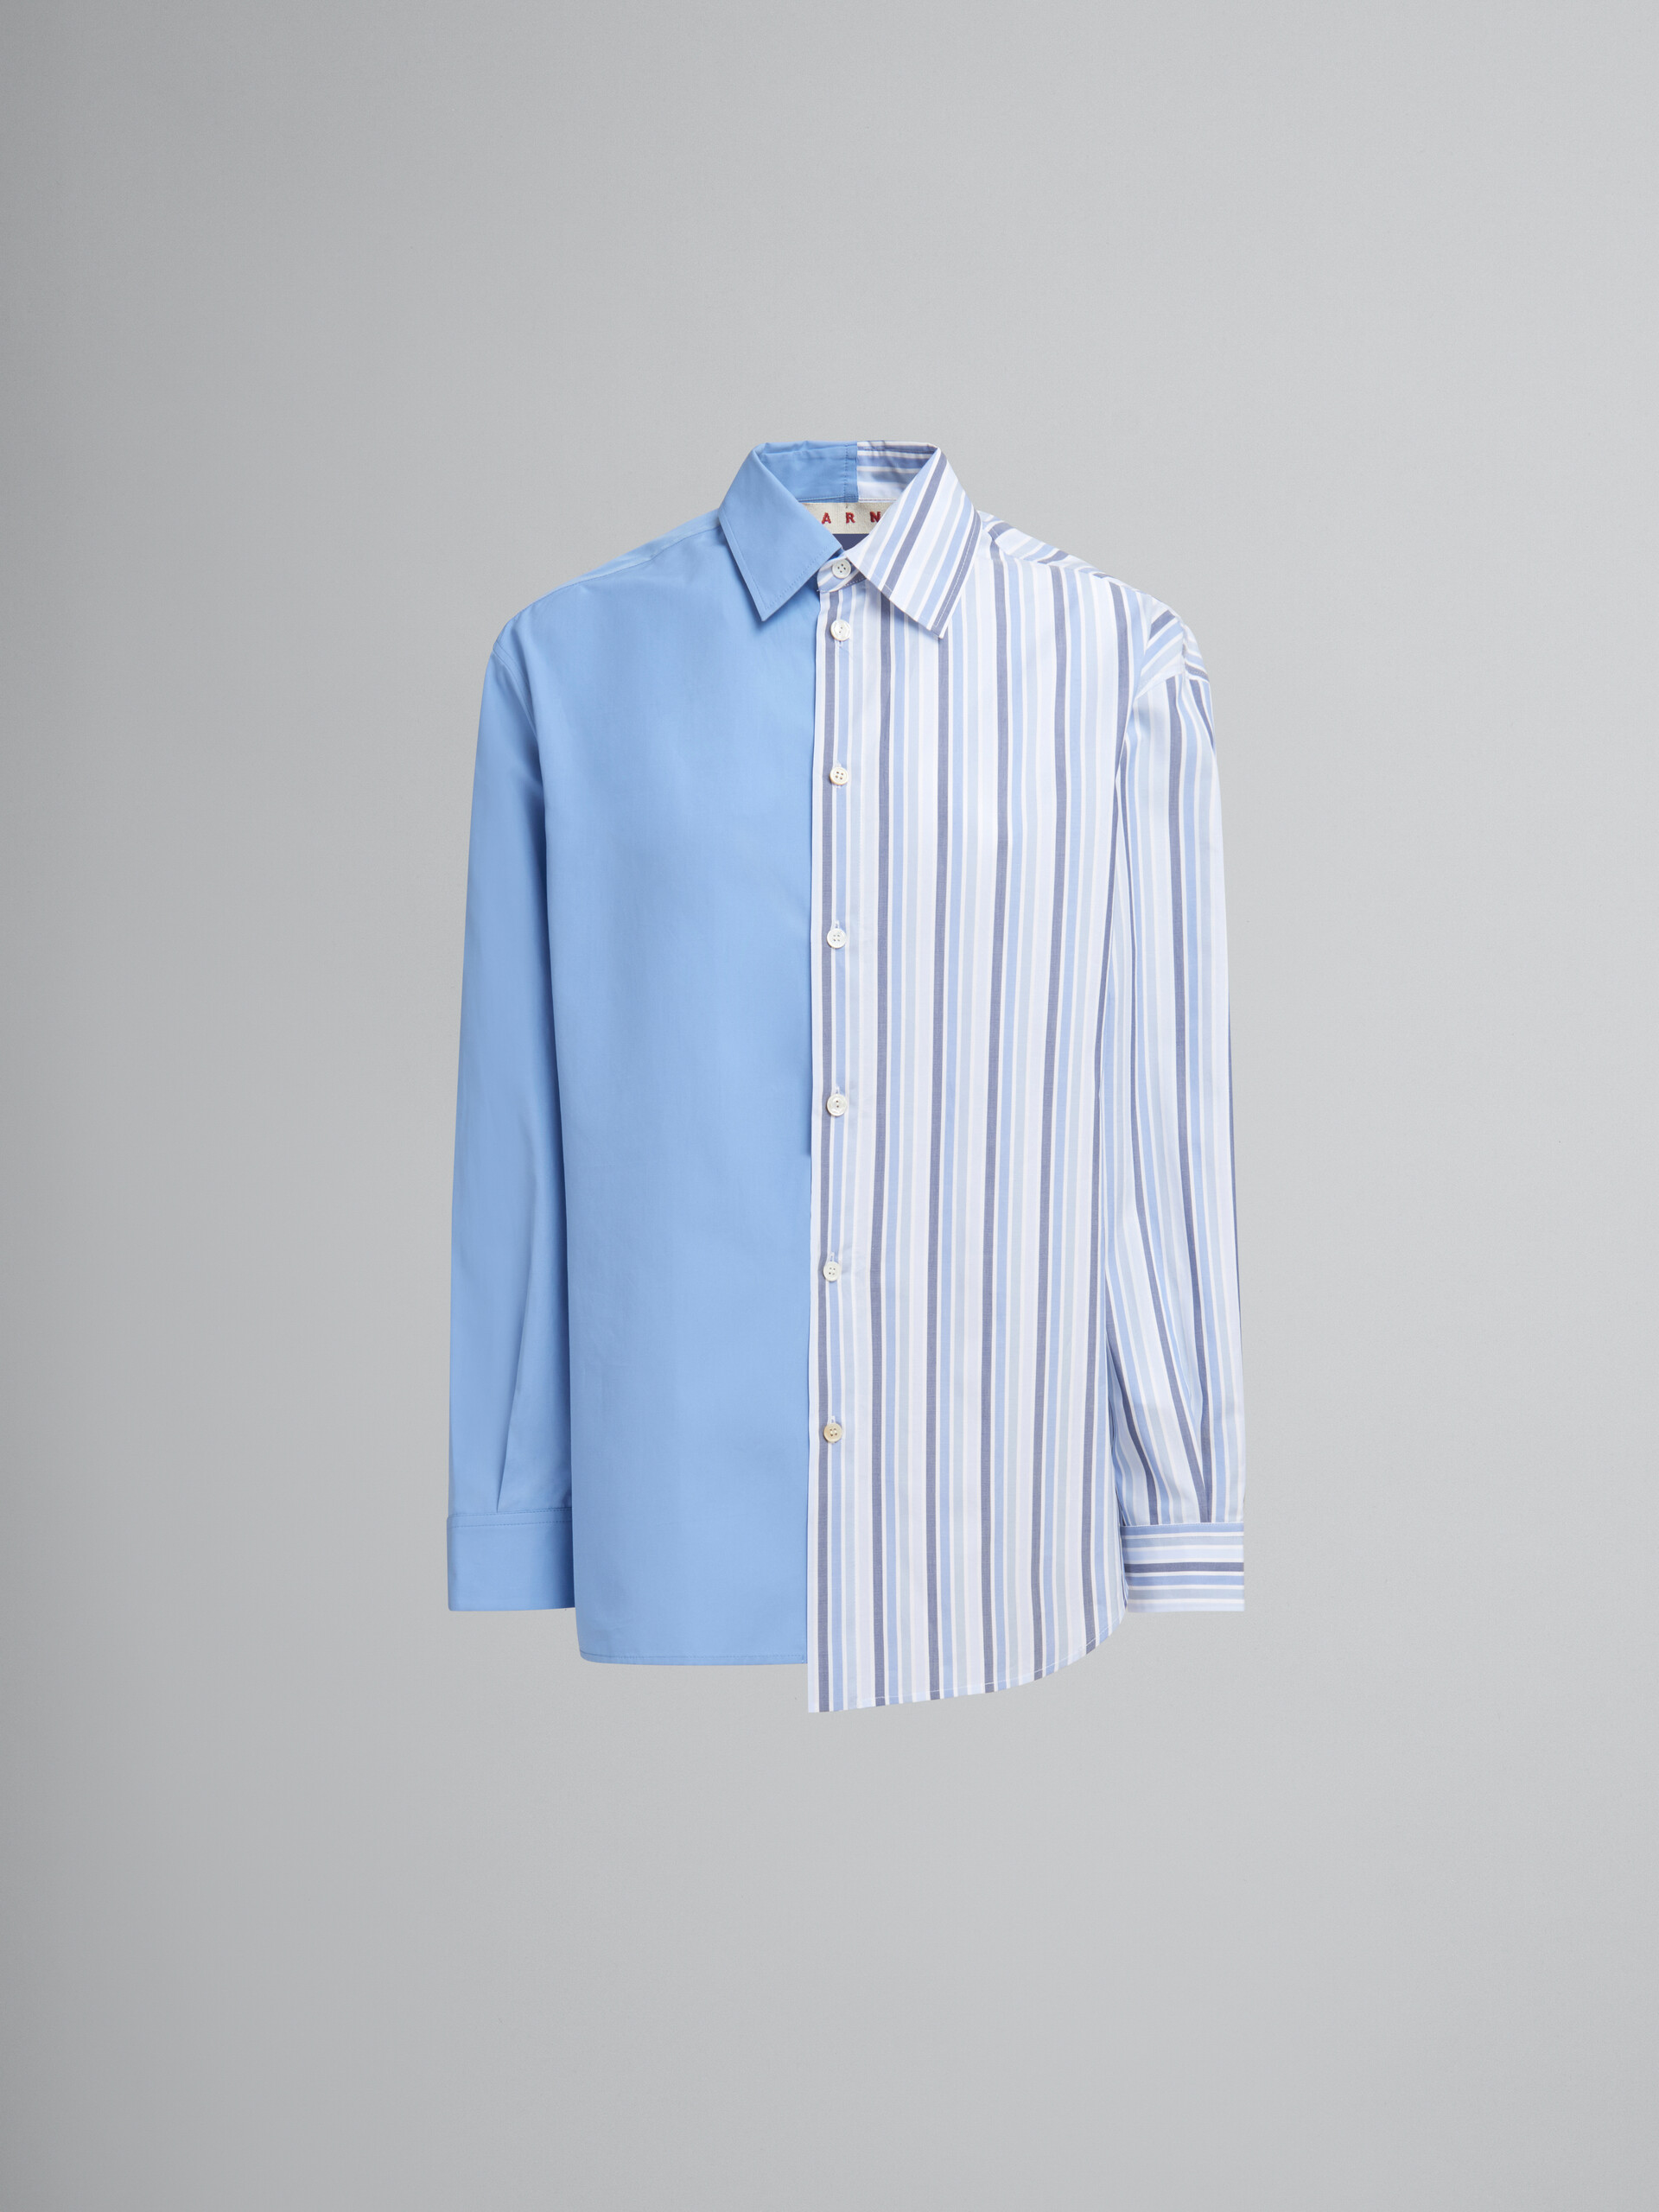 Camisa azul con diseño dividido por la mitad de popelina orgánica con cordón - Camisas - Image 1